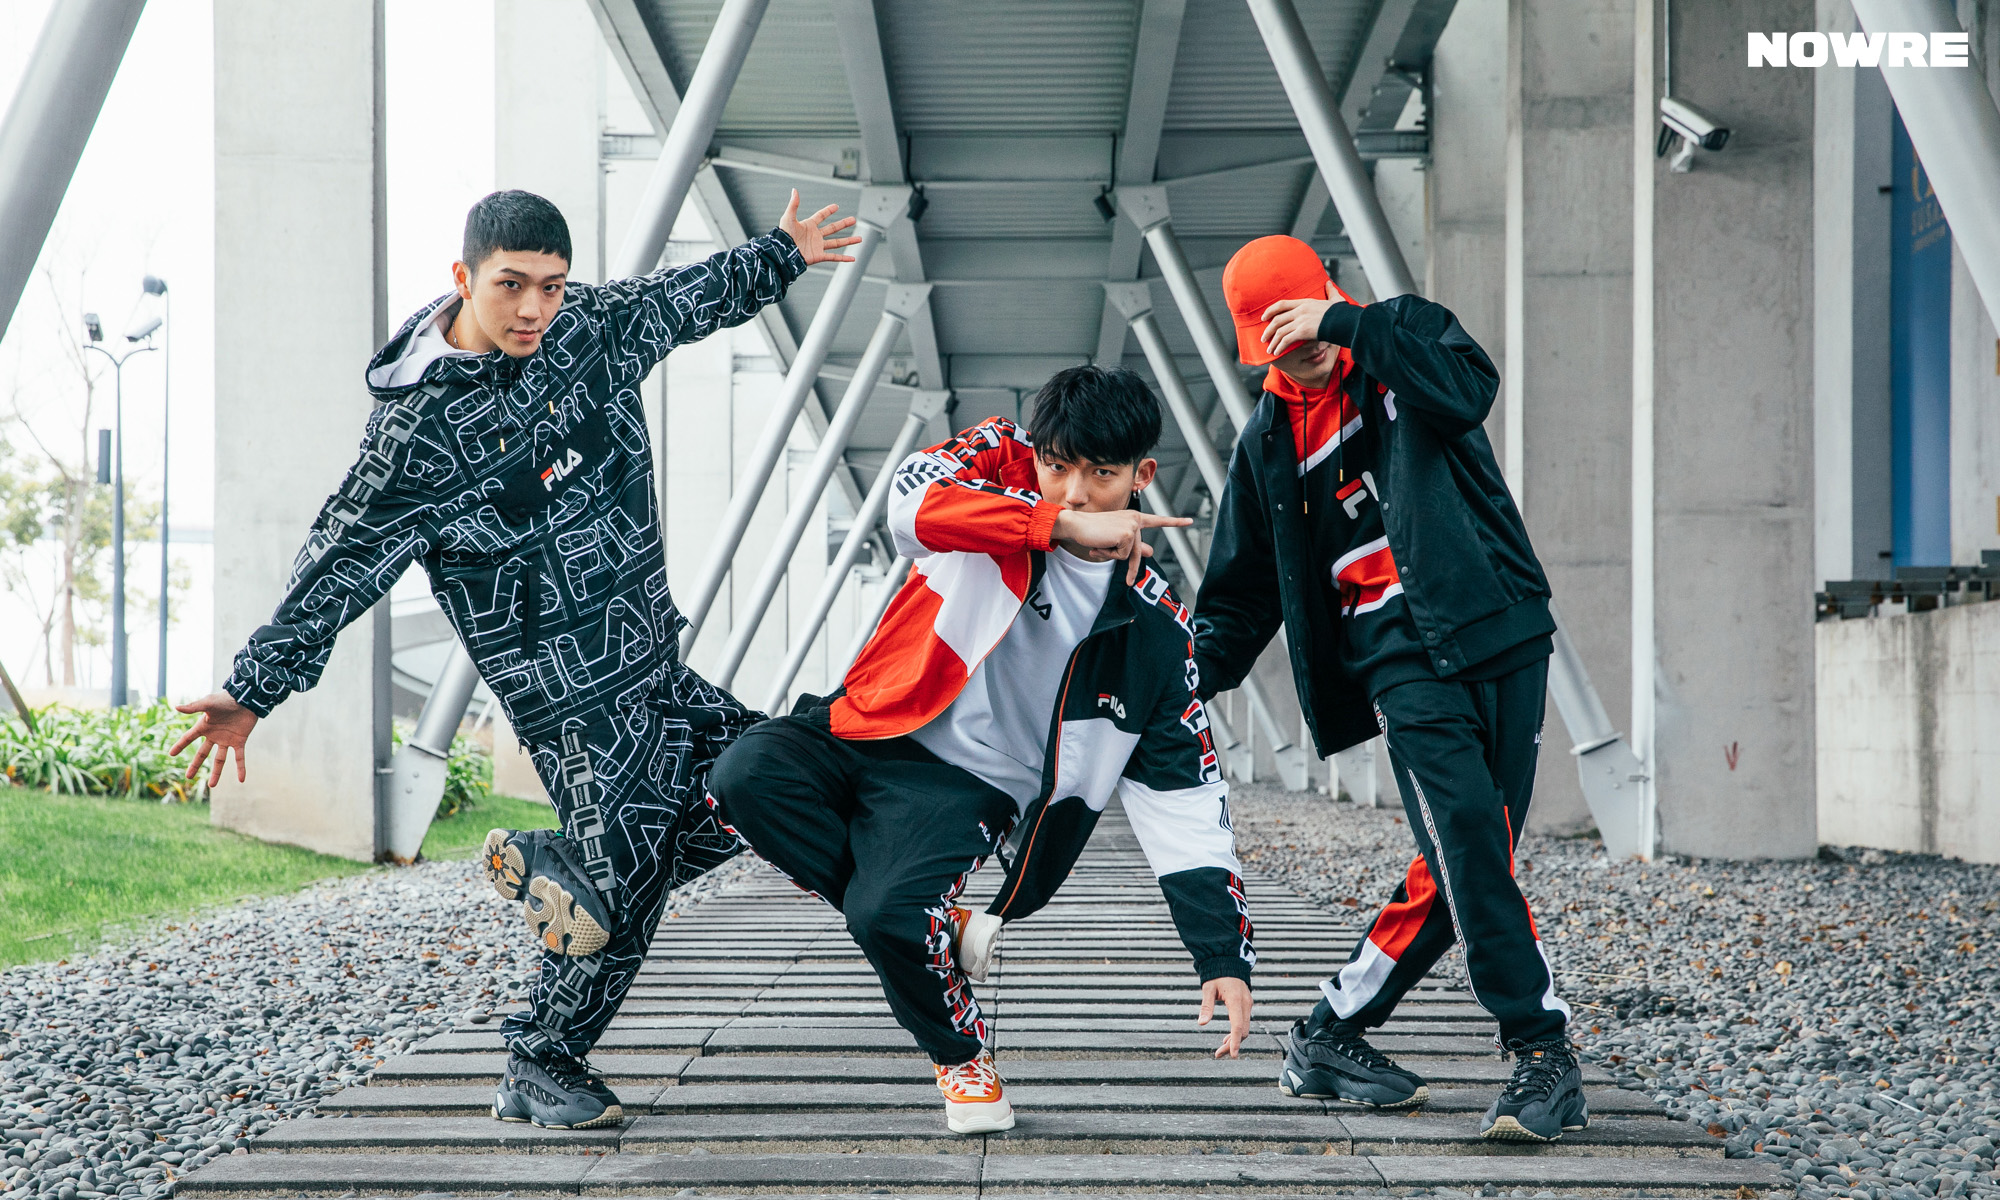 北语街舞队参加“Keep Keep高校街舞大赛”取得出色成绩-北京语言大学新闻网